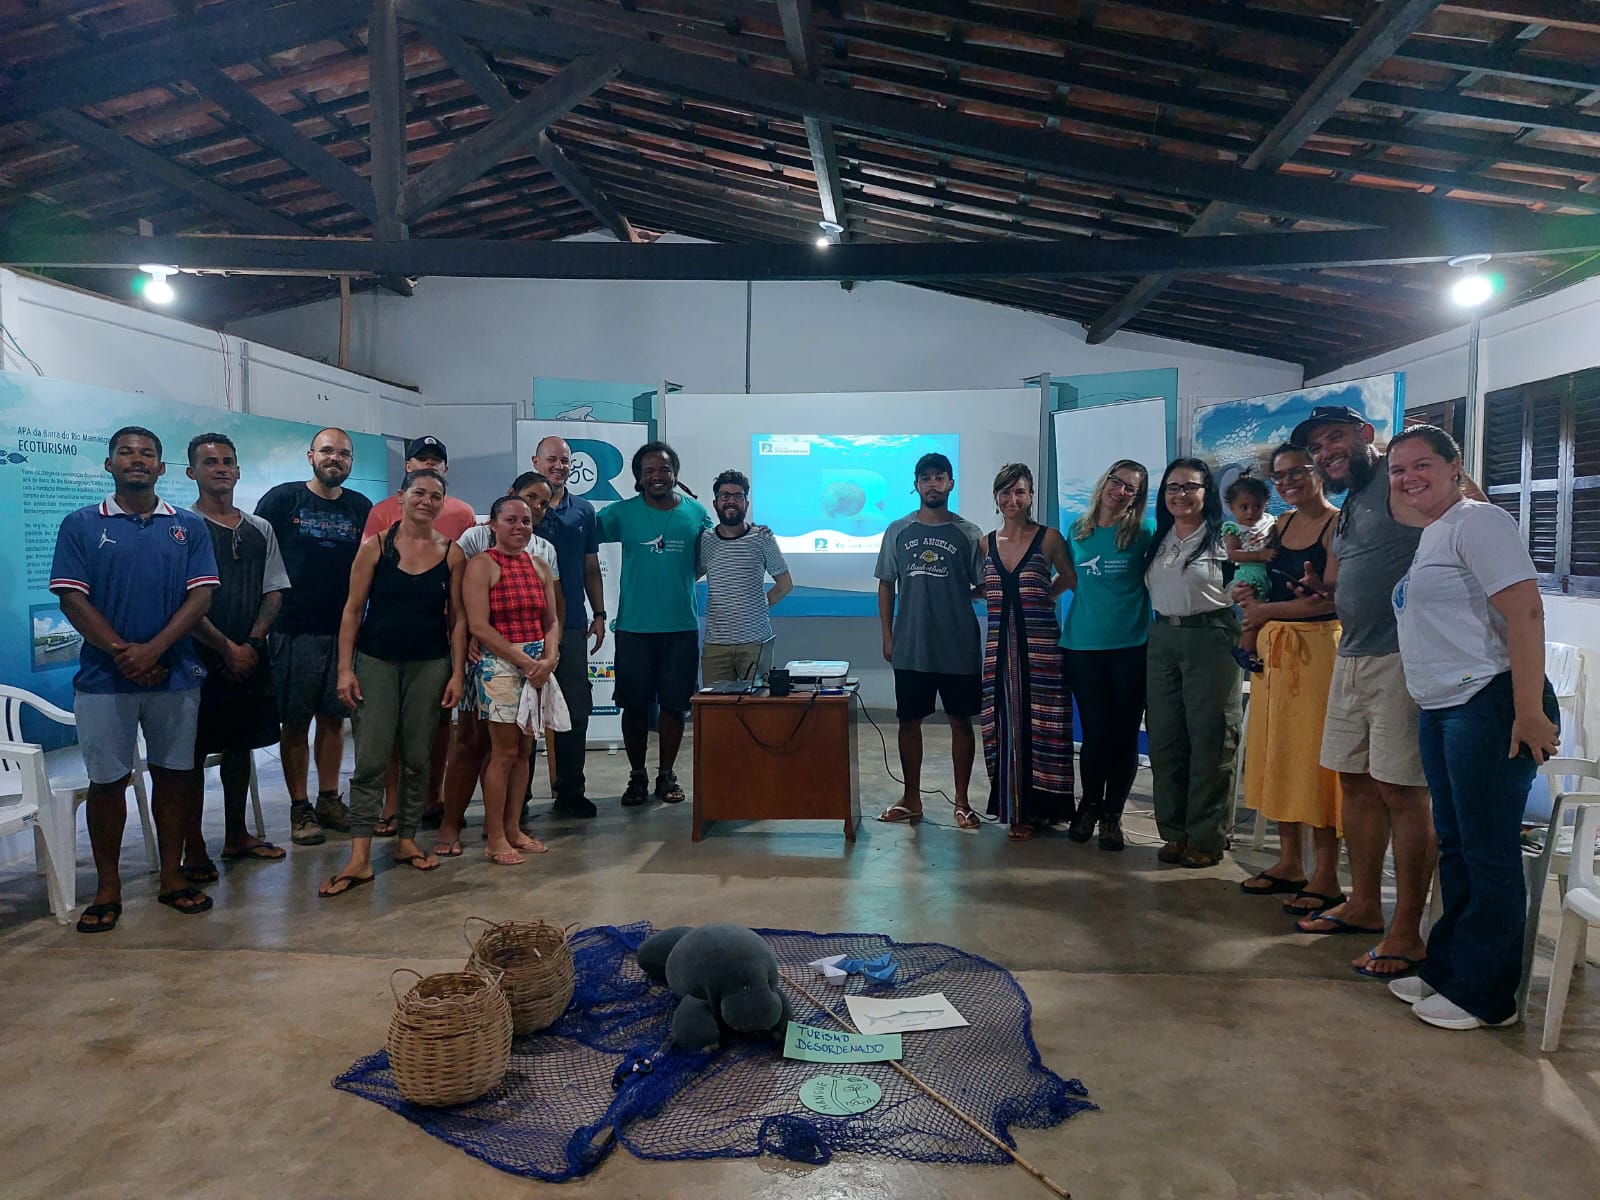 Rota do Peixe-Boi-Marinho: conheça os esforços para o desenvolvimento comunitário e a preservação dos espaços naturais na Barra do Mamanguape-PB.